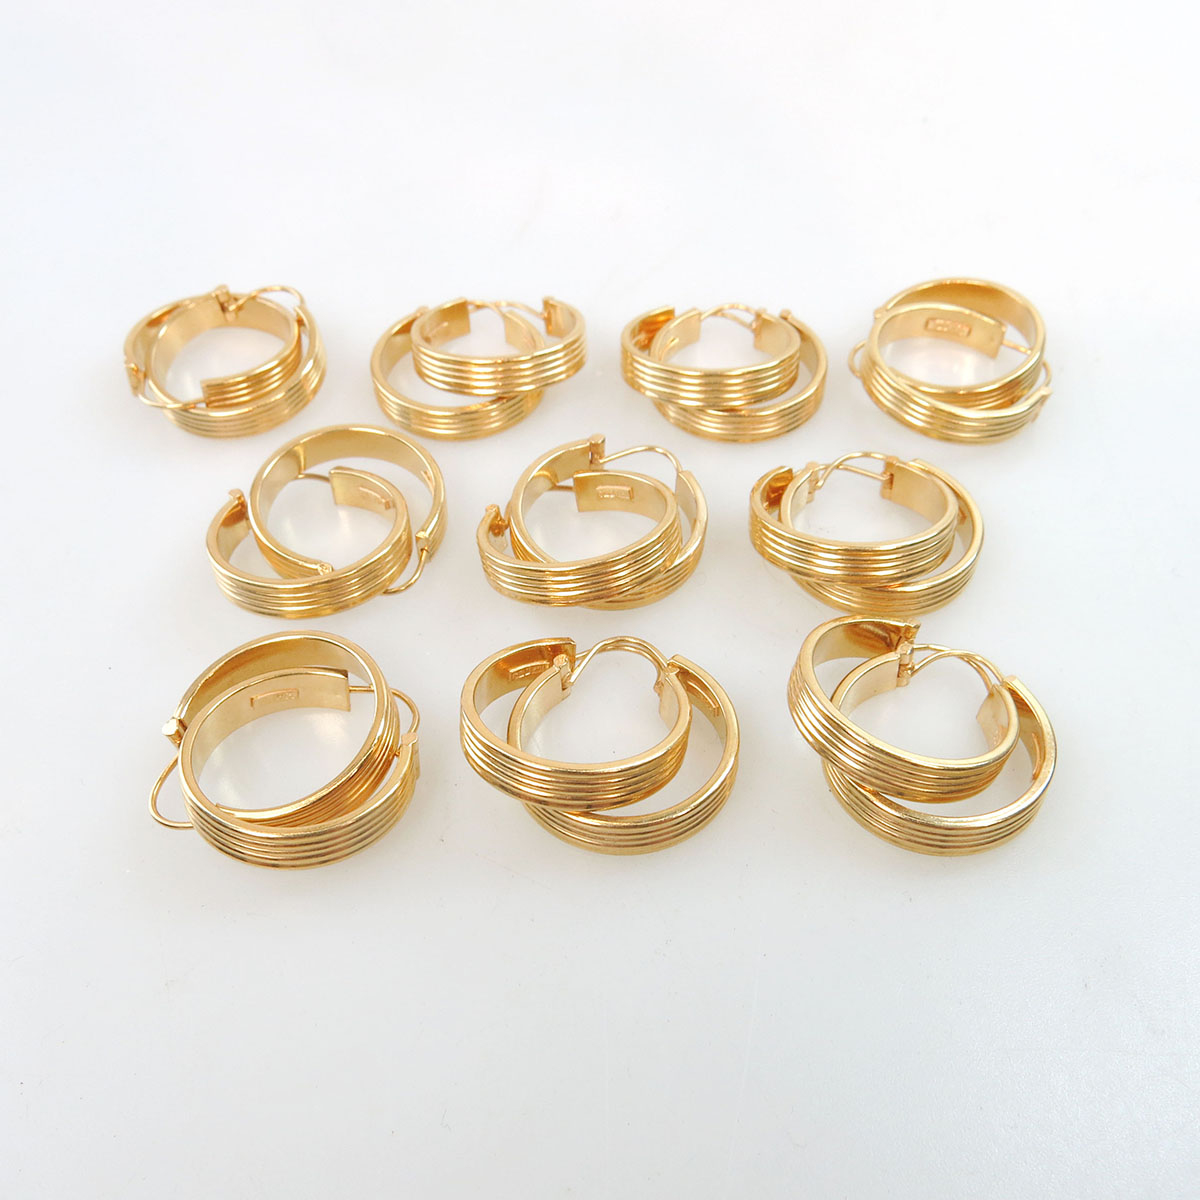 10 Pairs Of 18k Yellow Gold Hoop Earrings